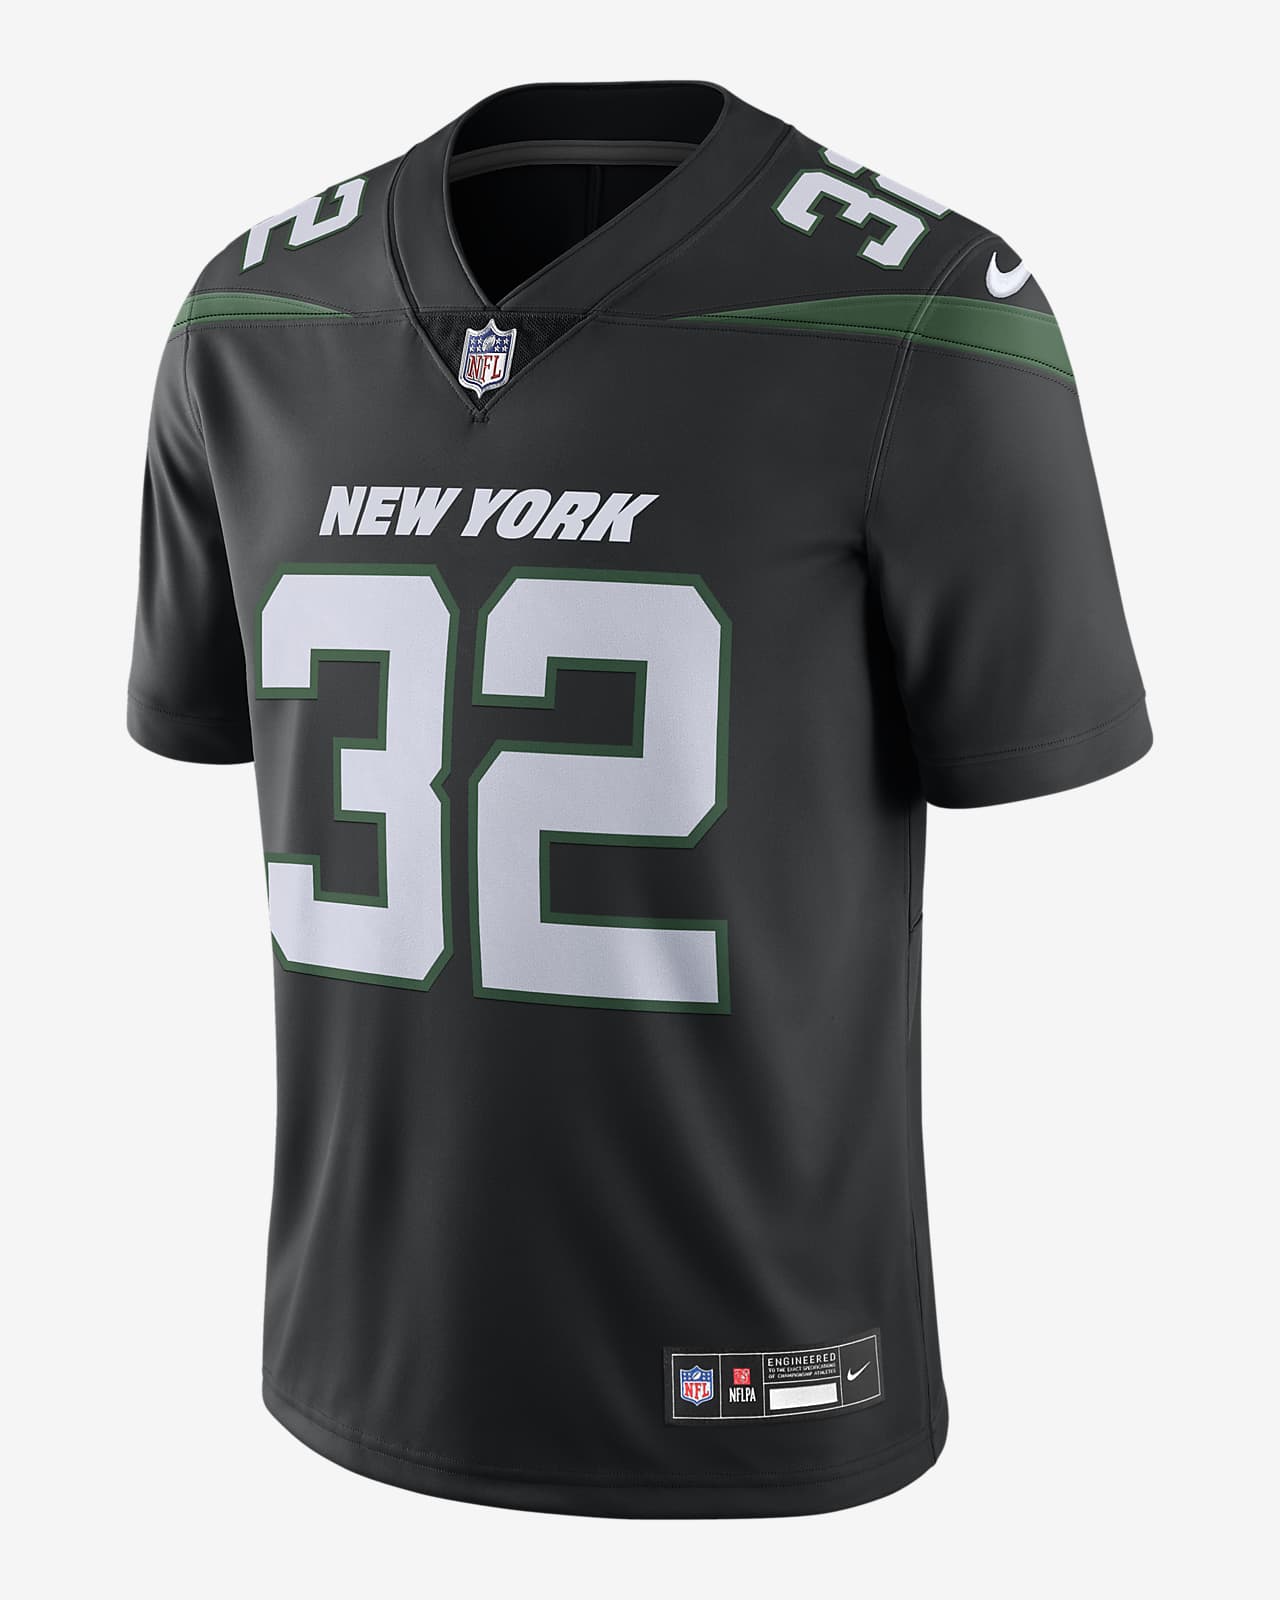 New York Jets Football Uniform Leggings For Men